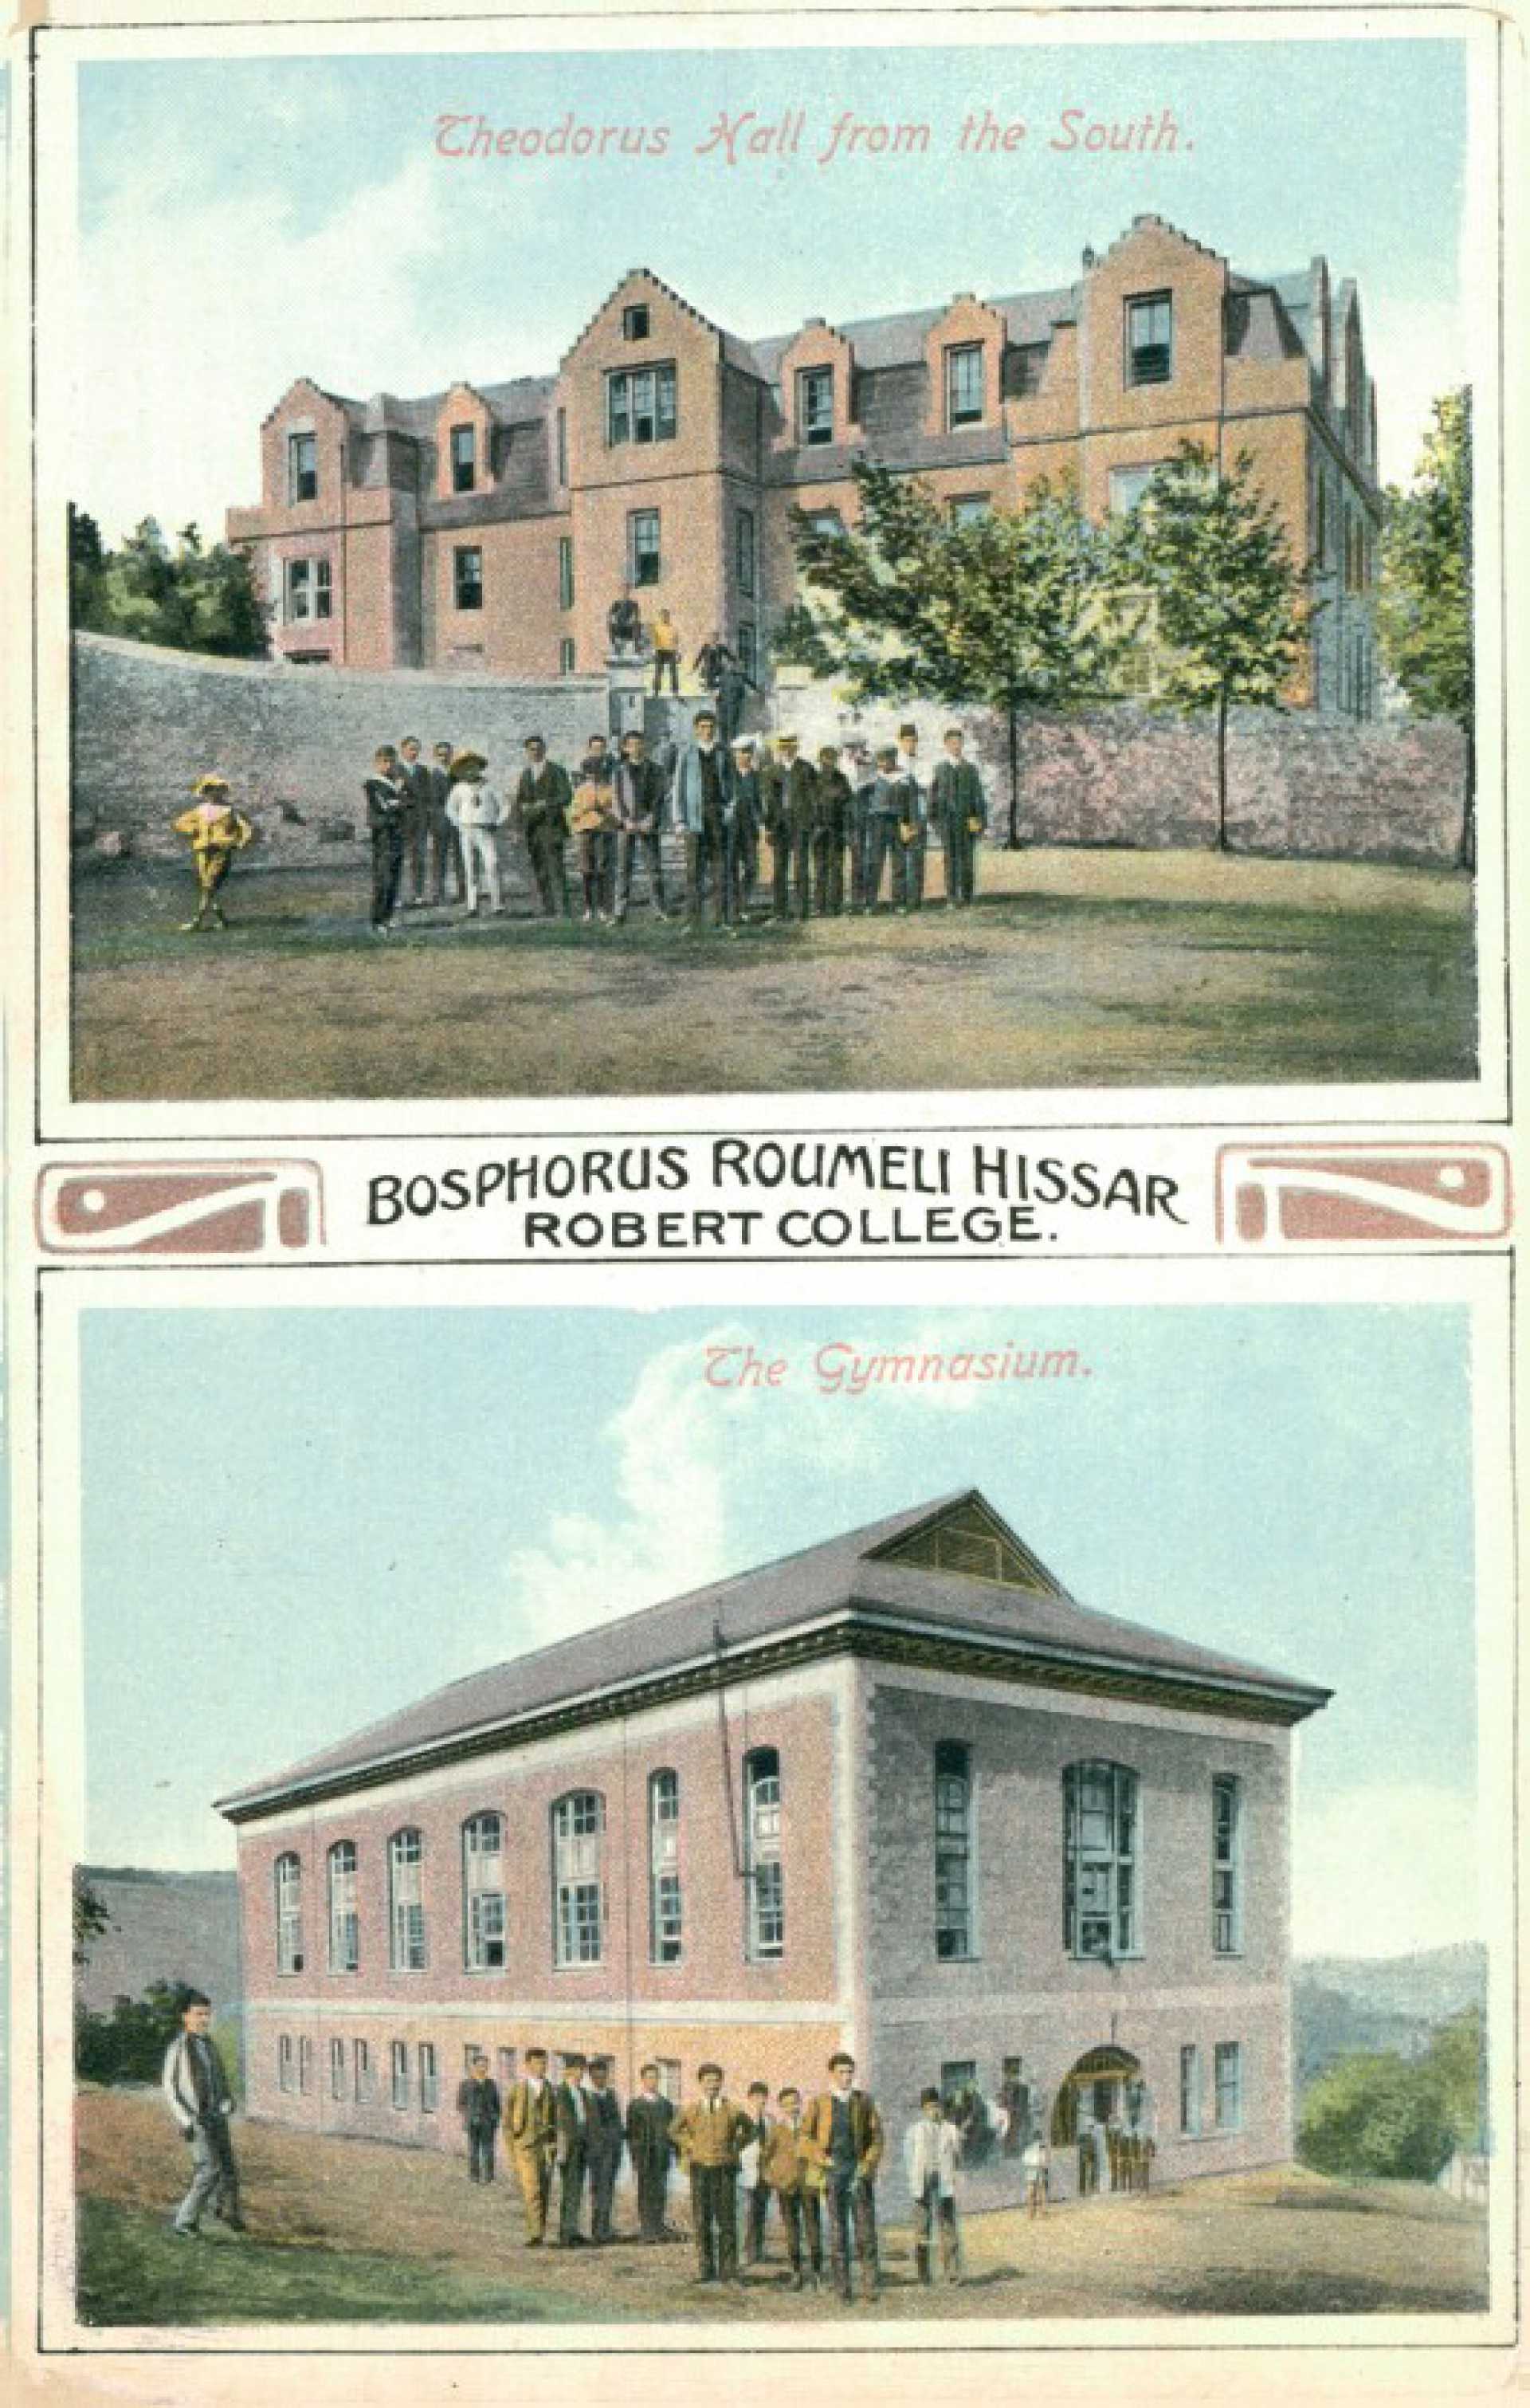 Bosphorus Roumeli Hissar Robert College